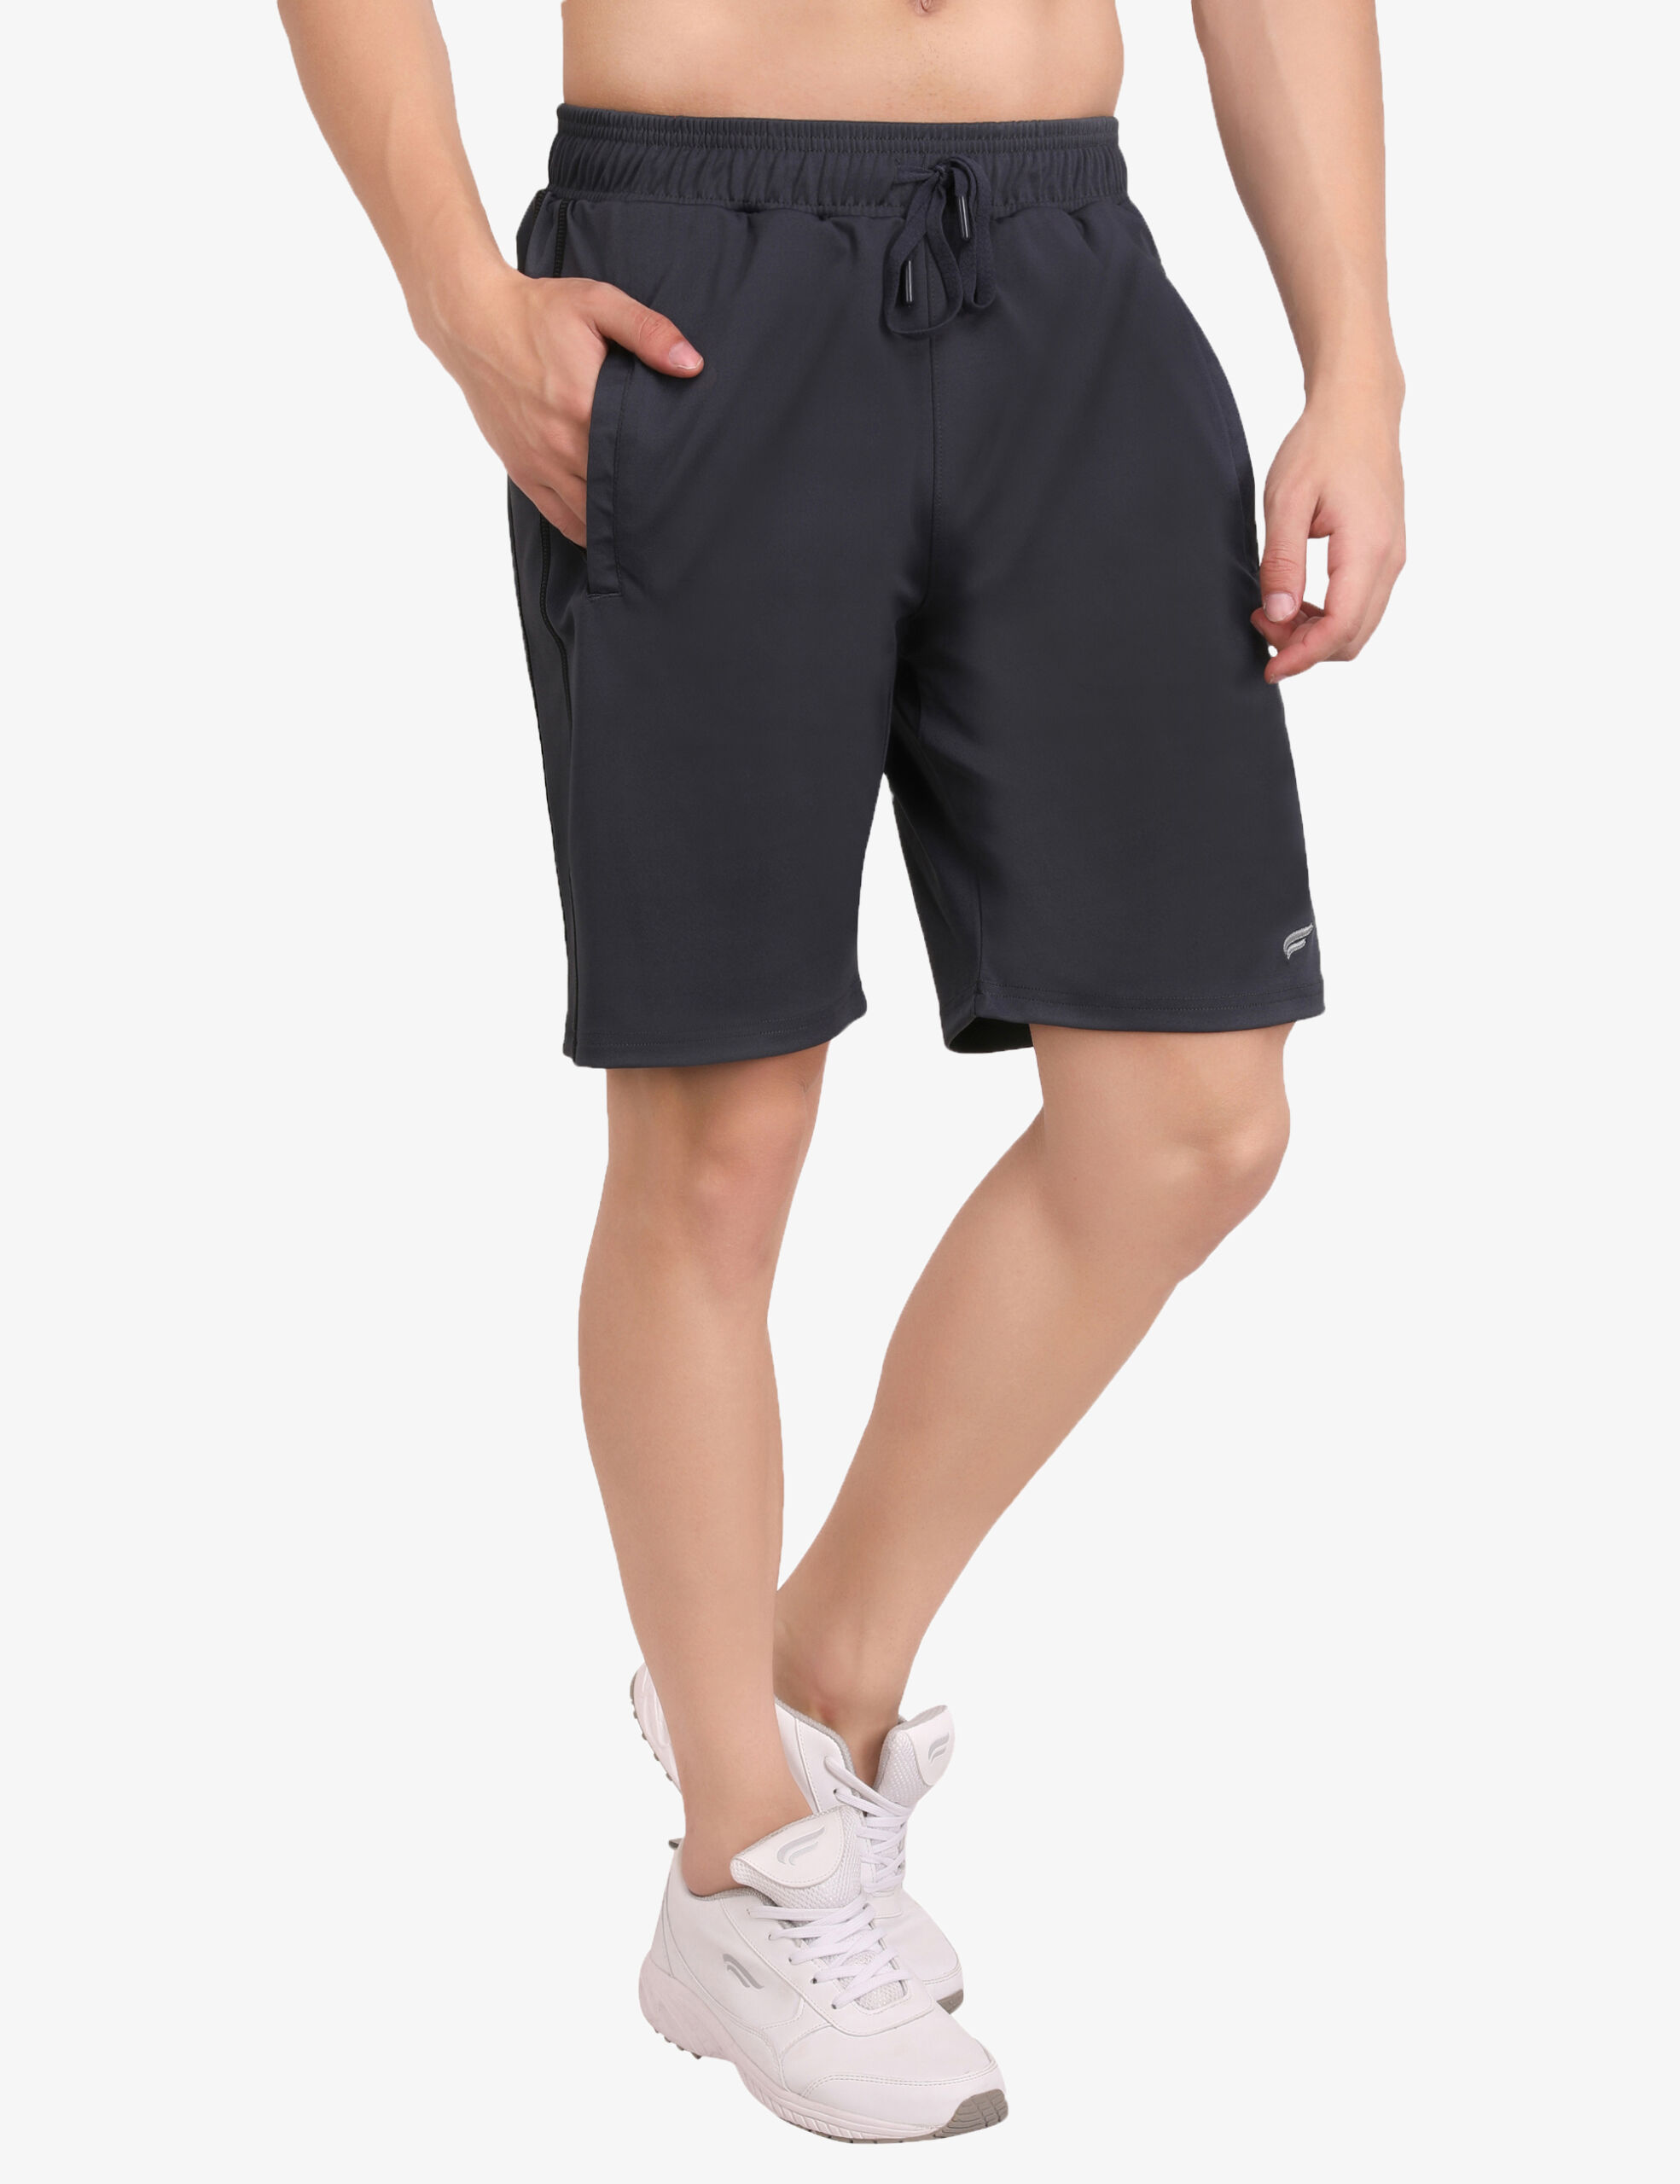 ASI Breeza Dark Grey Shorts for Men